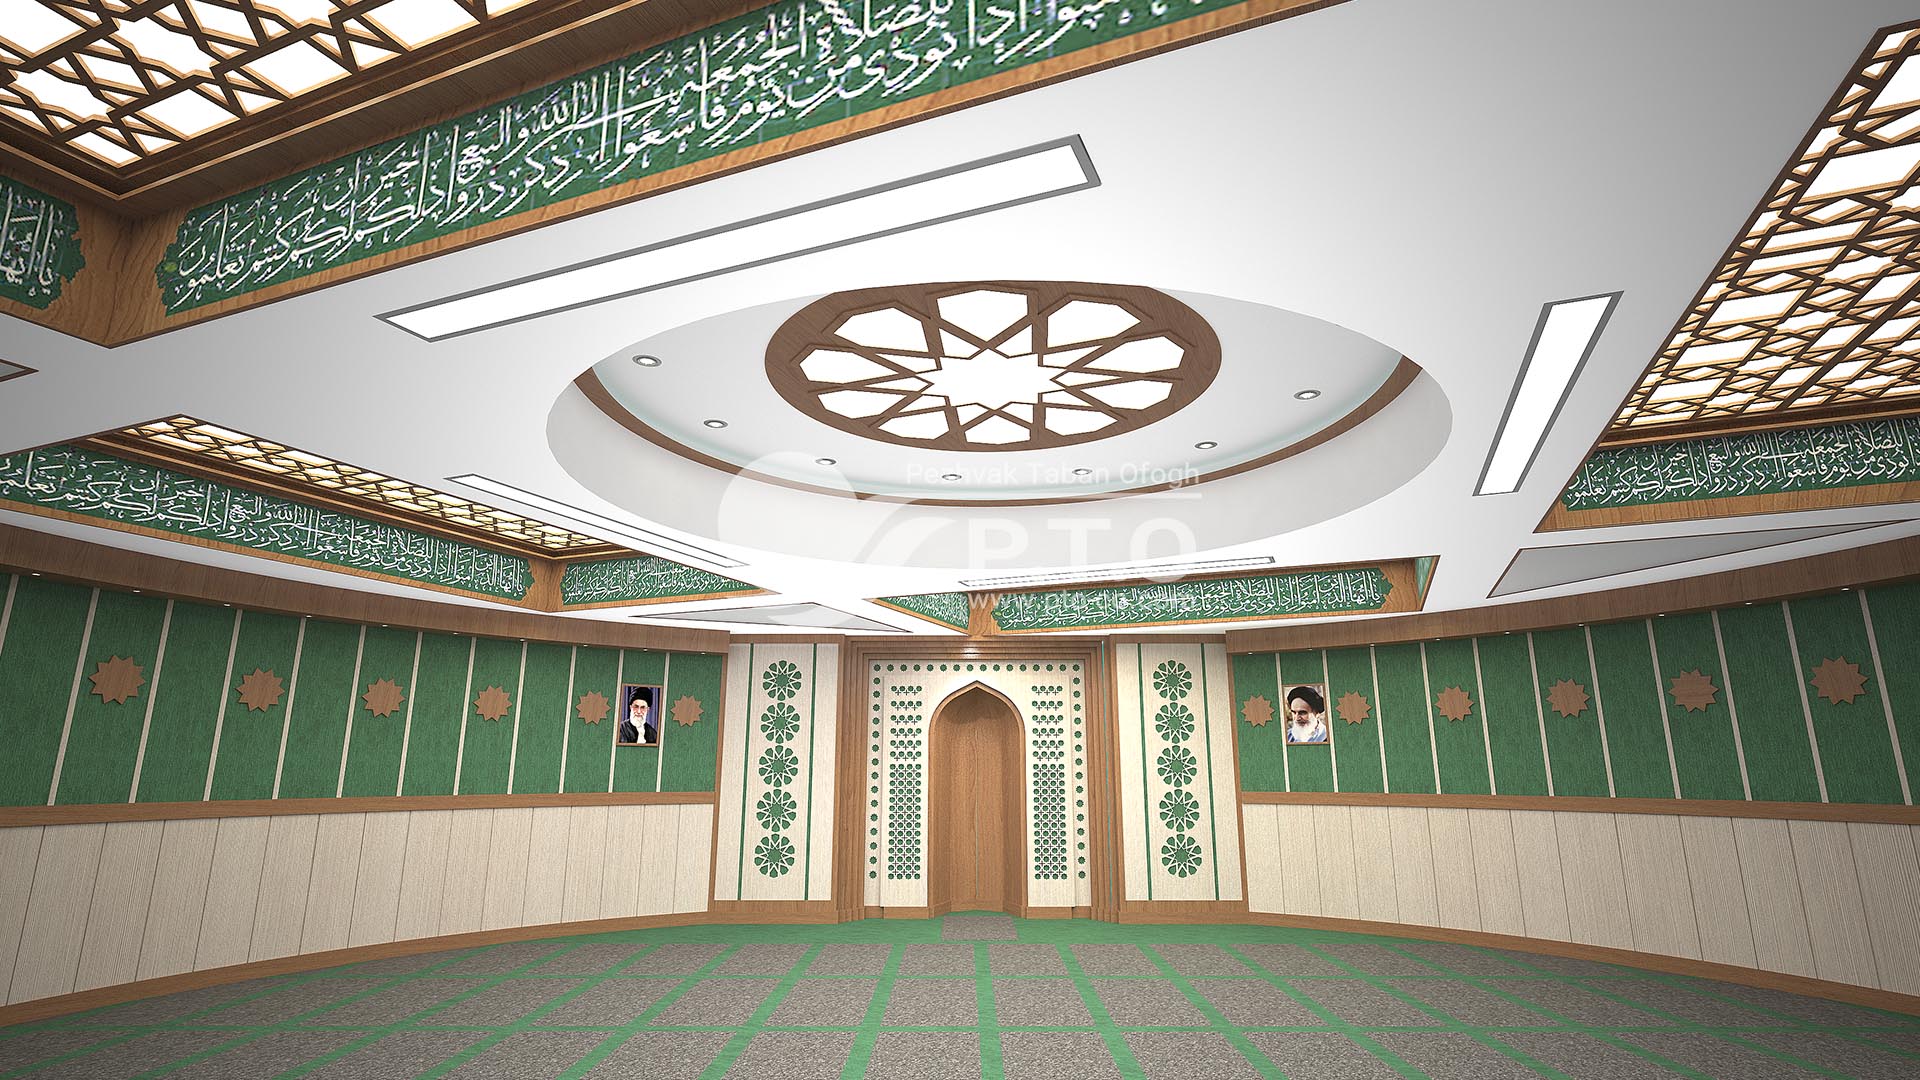 طراحی اماکن مذهبی | تجهیز اماکن مذهبی | سالن نمازخانه دادگستری کل استان همدان